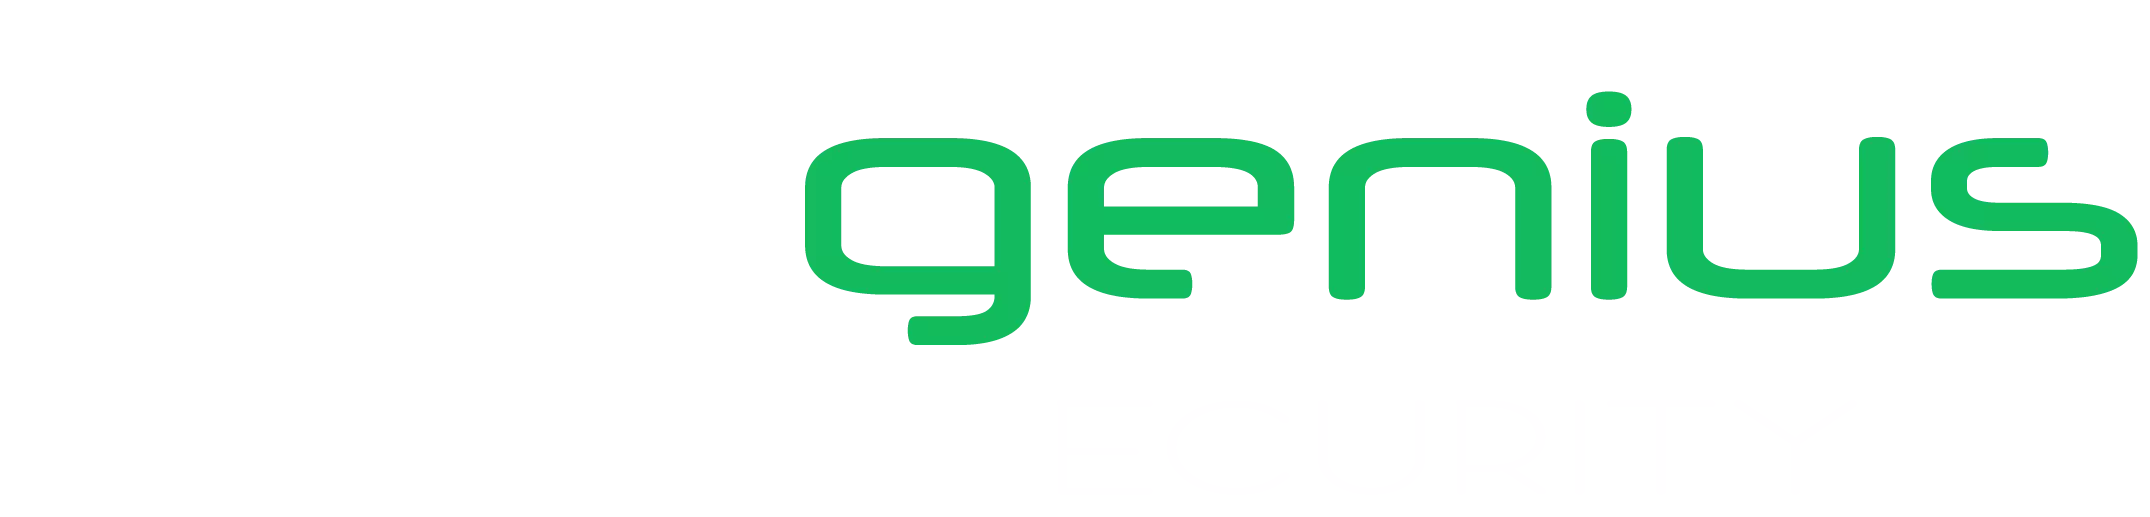 Expert en Cybersécurité et Maintenance informatique - Spécialiste Réseaux et Protection des données.